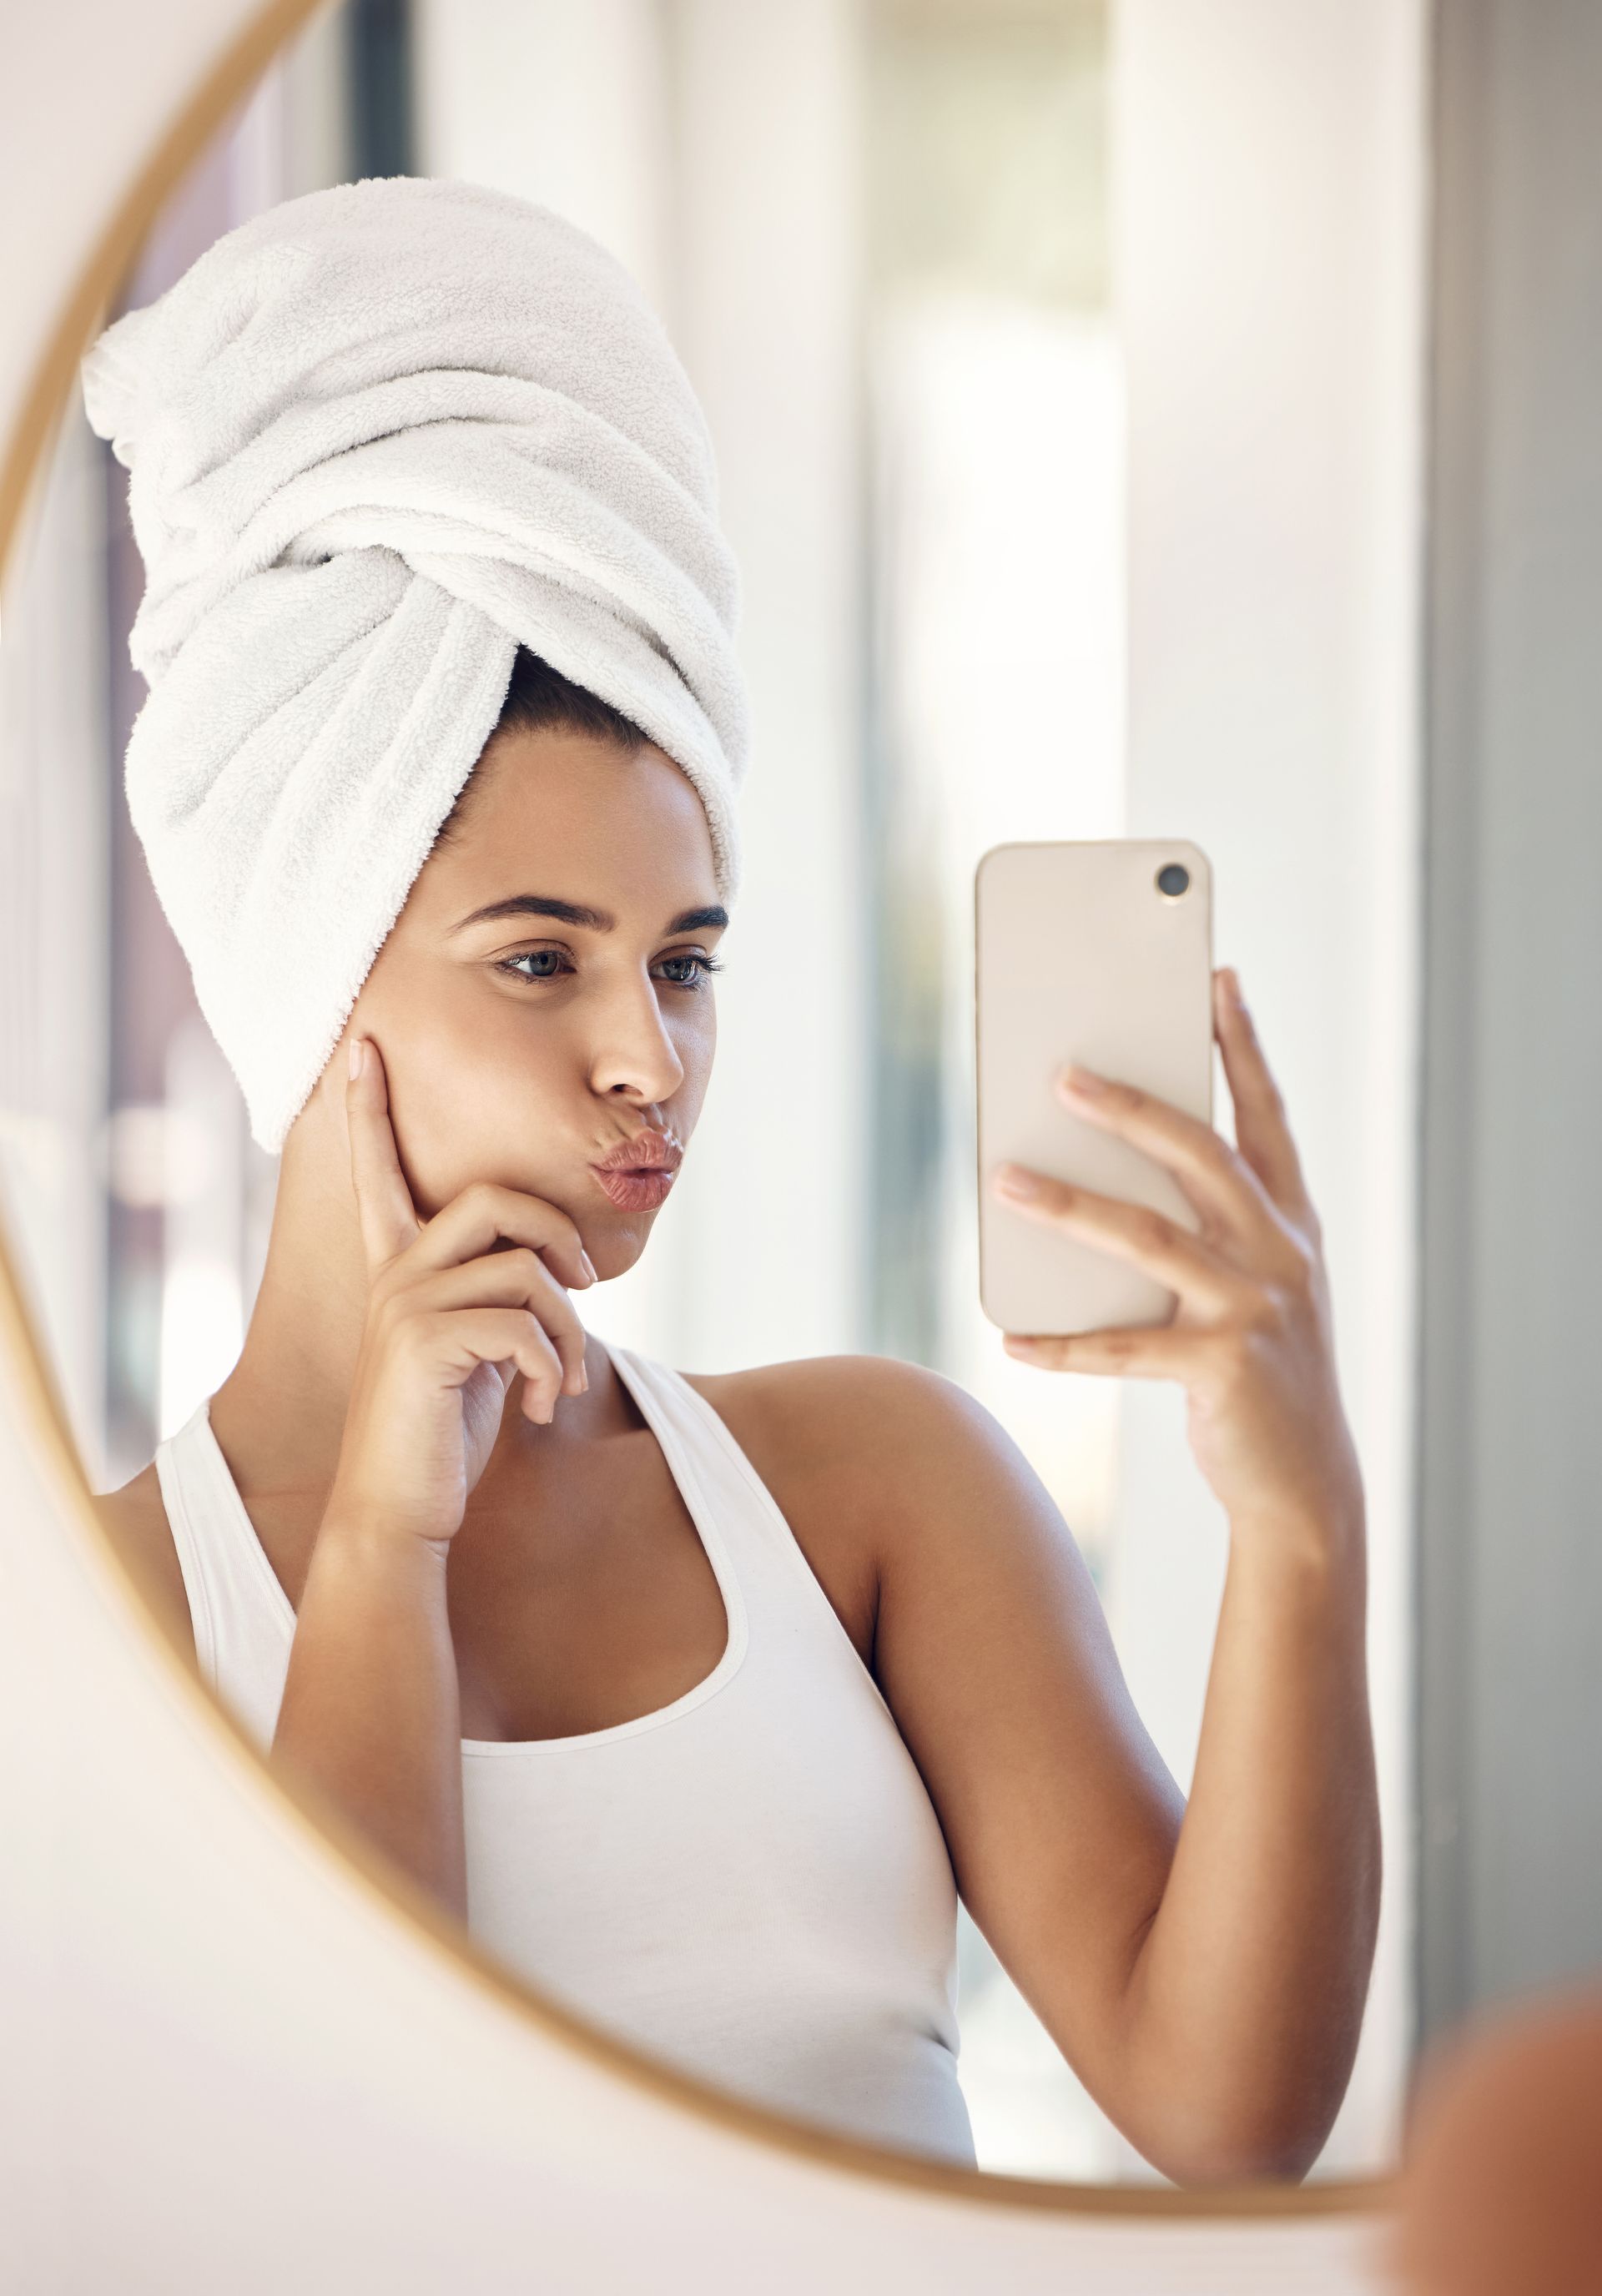 selfie of woman in hair towel